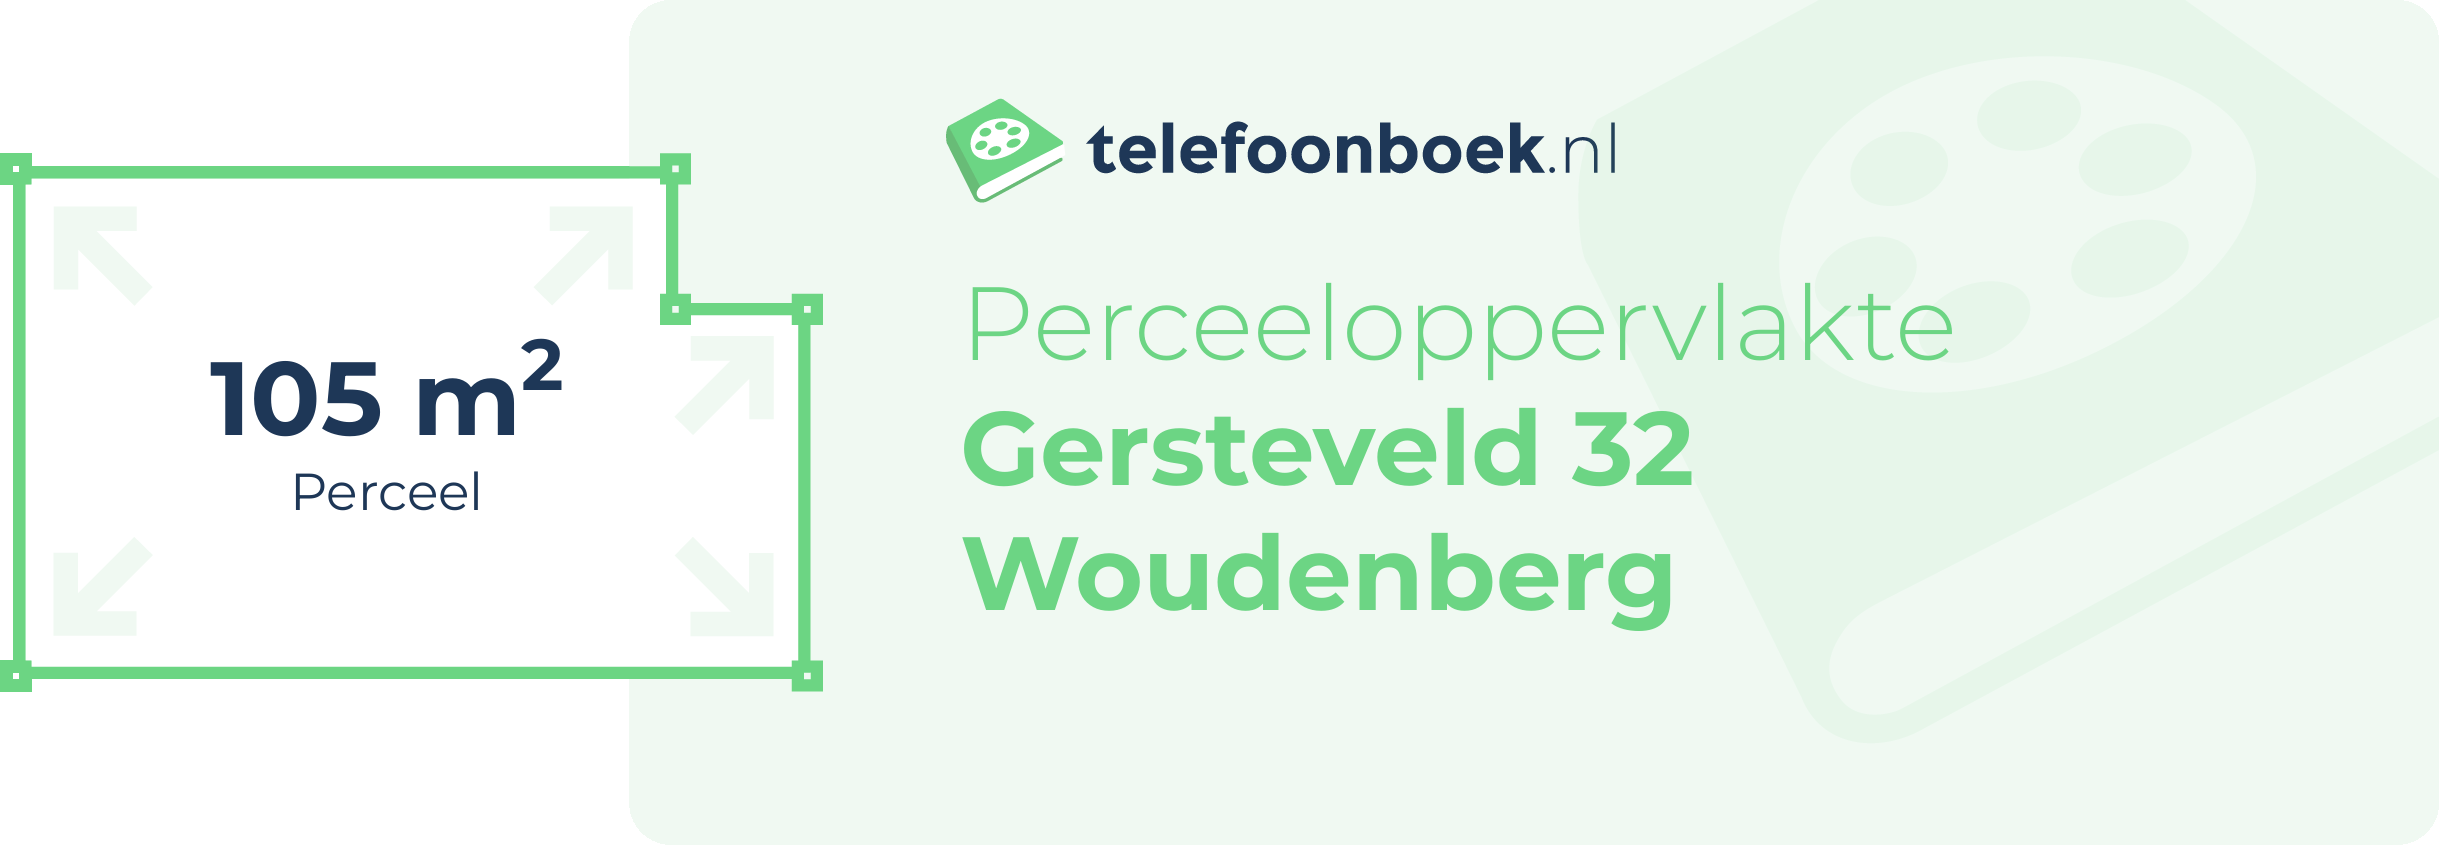 Perceeloppervlakte Gersteveld 32 Woudenberg